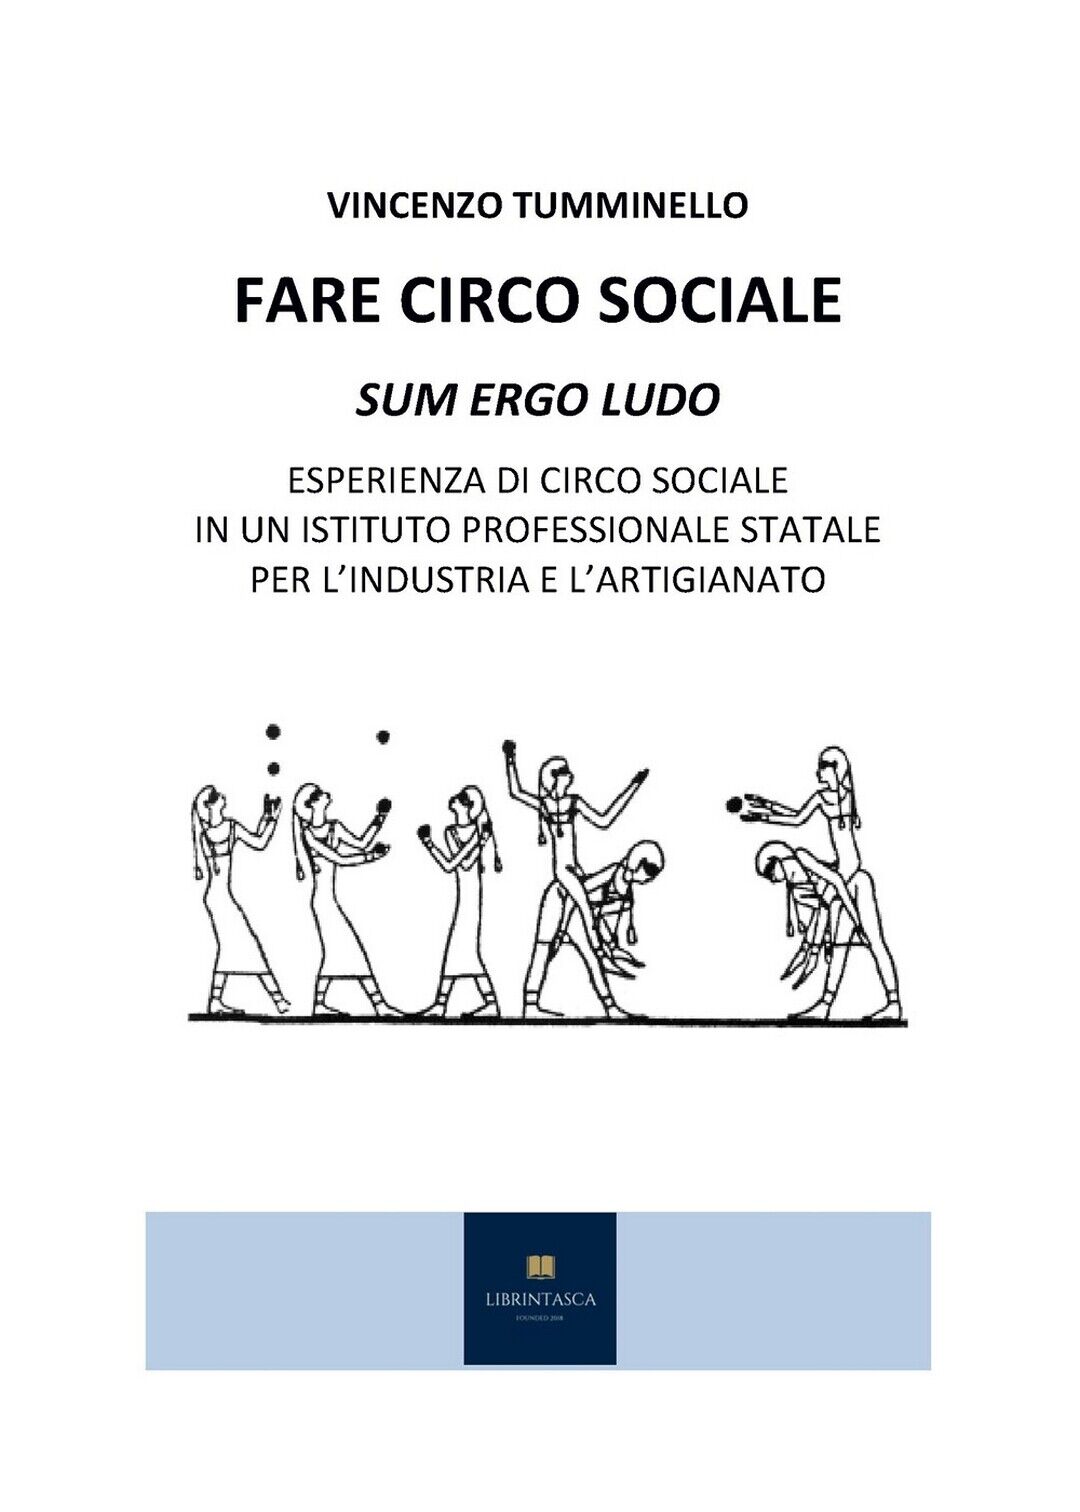 Fare Circo Sociale  di Vincenzo Tumminello,  2020,  Youcanprint